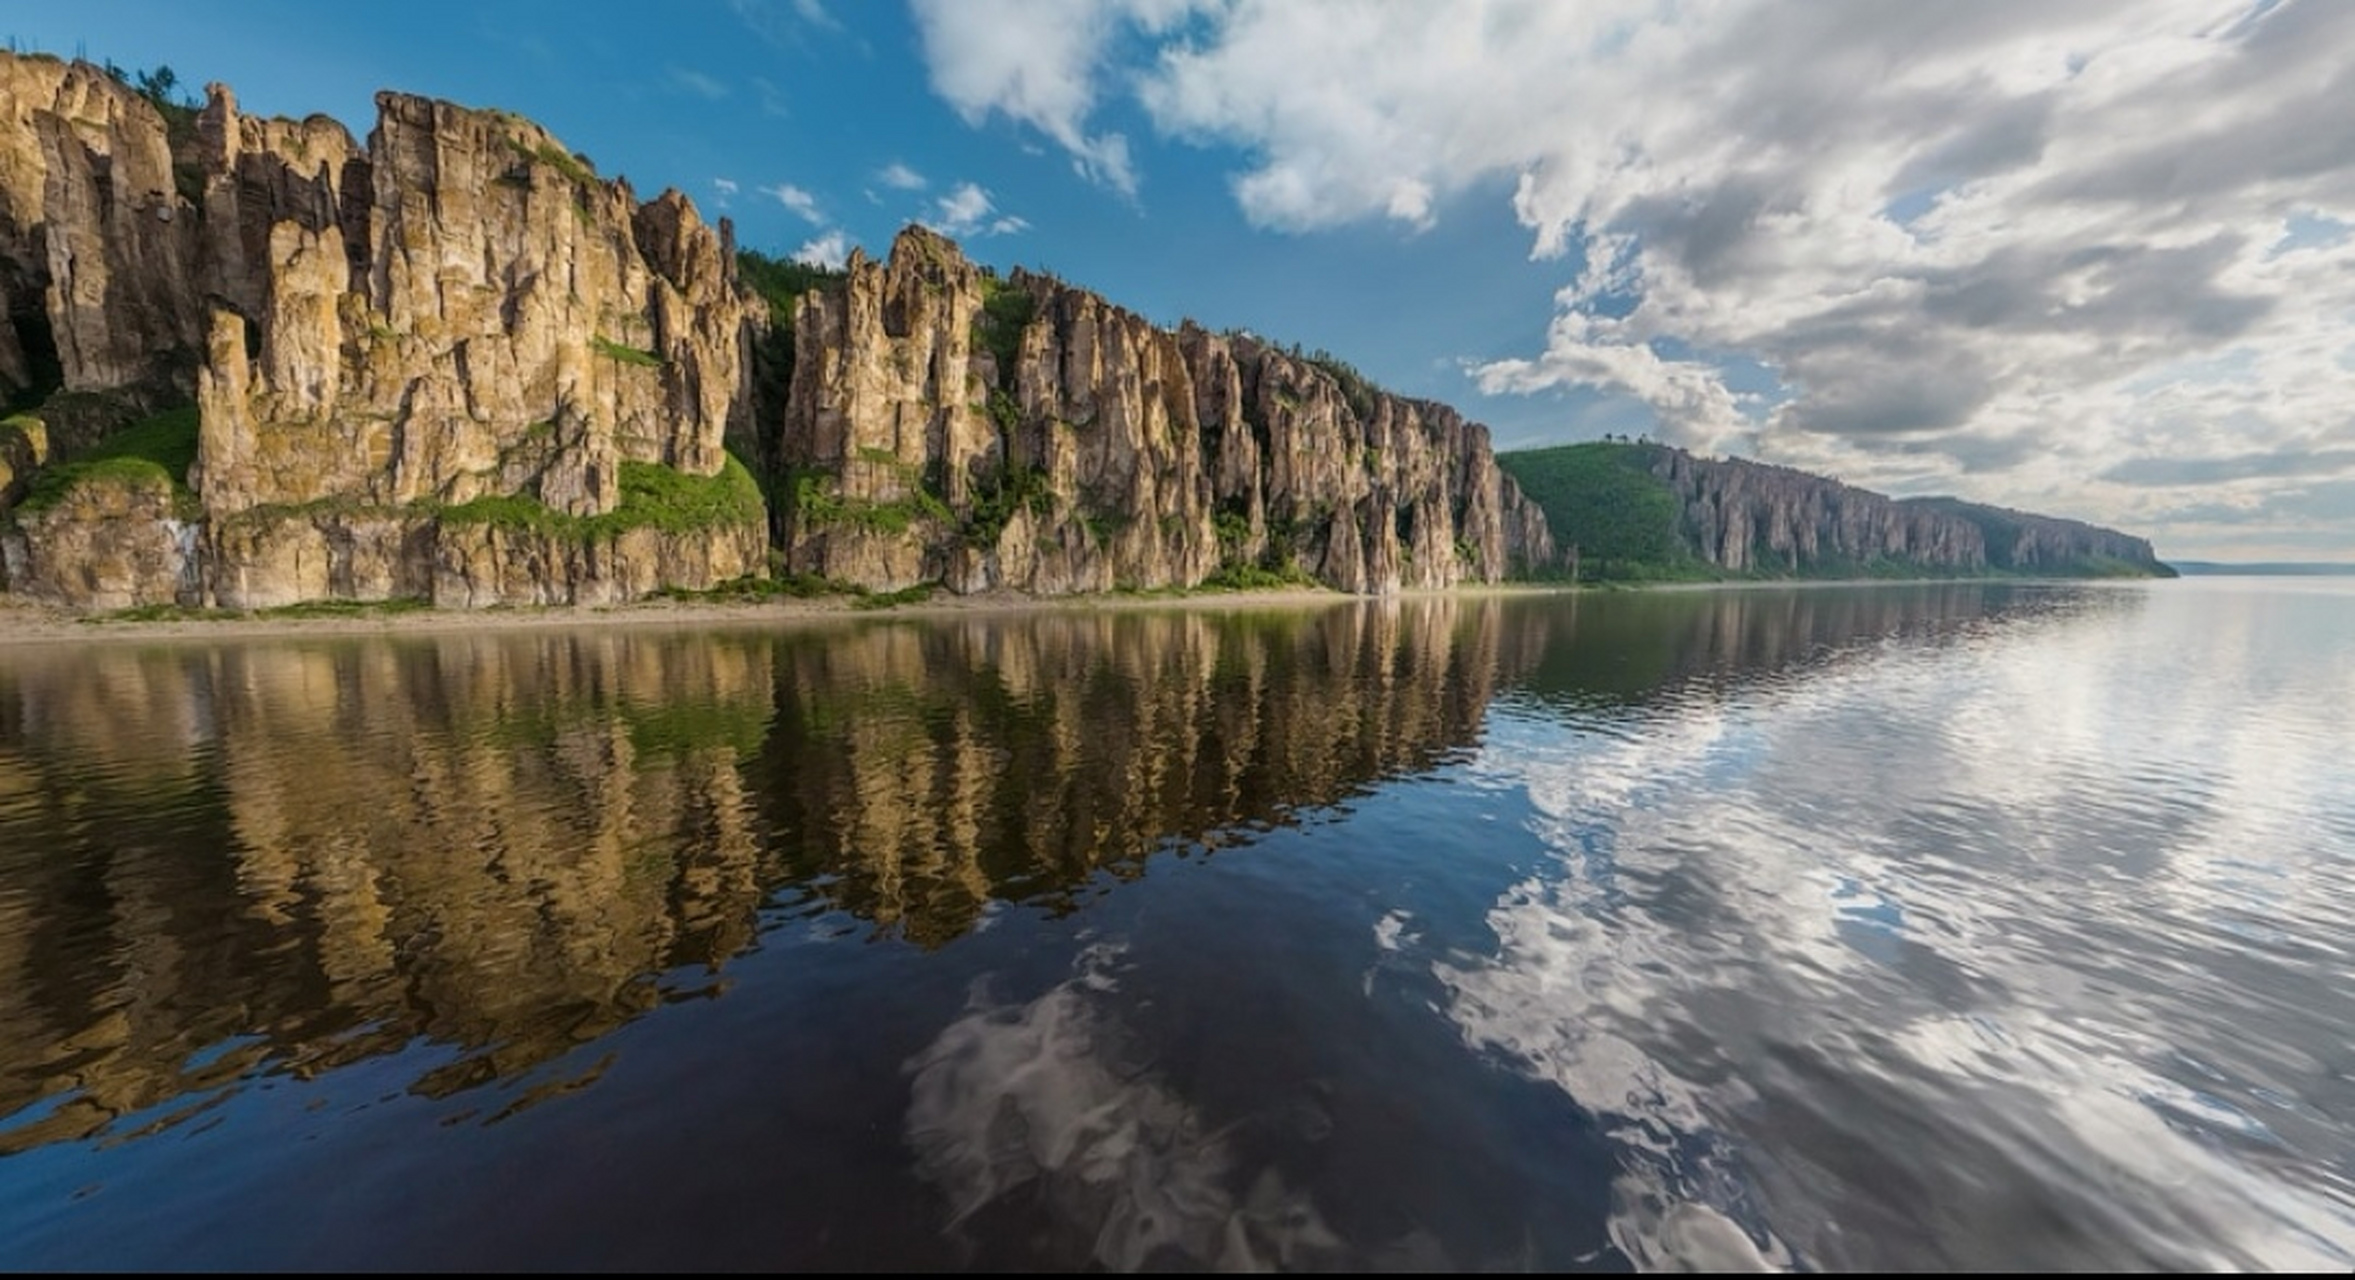 俄罗斯十大河流,7条位于亚洲: 1,叶尼塞河:全长5500公里,是流入北冰洋